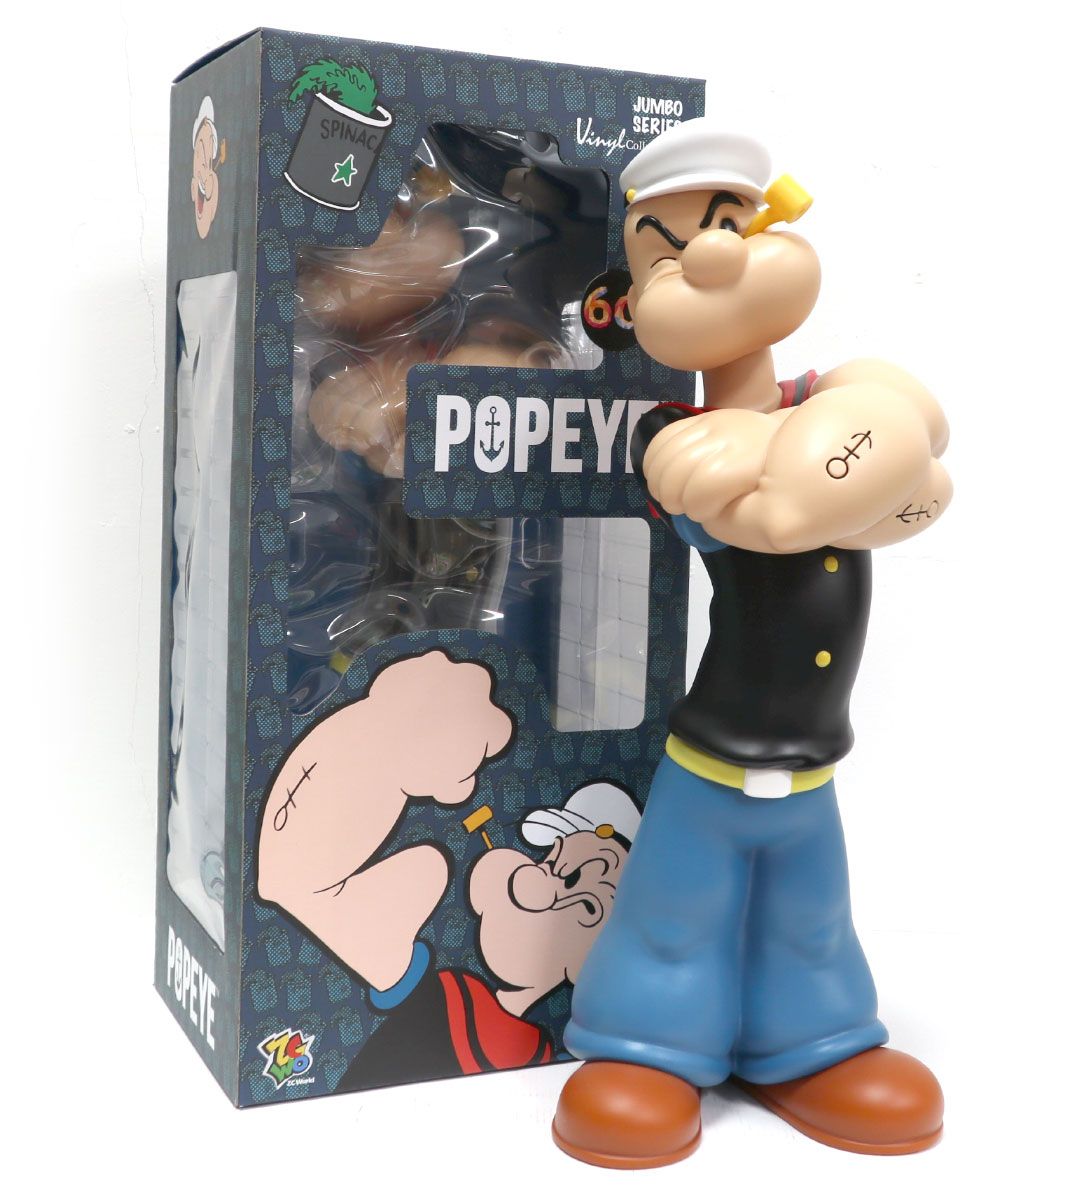 Popeye 90th anniversary